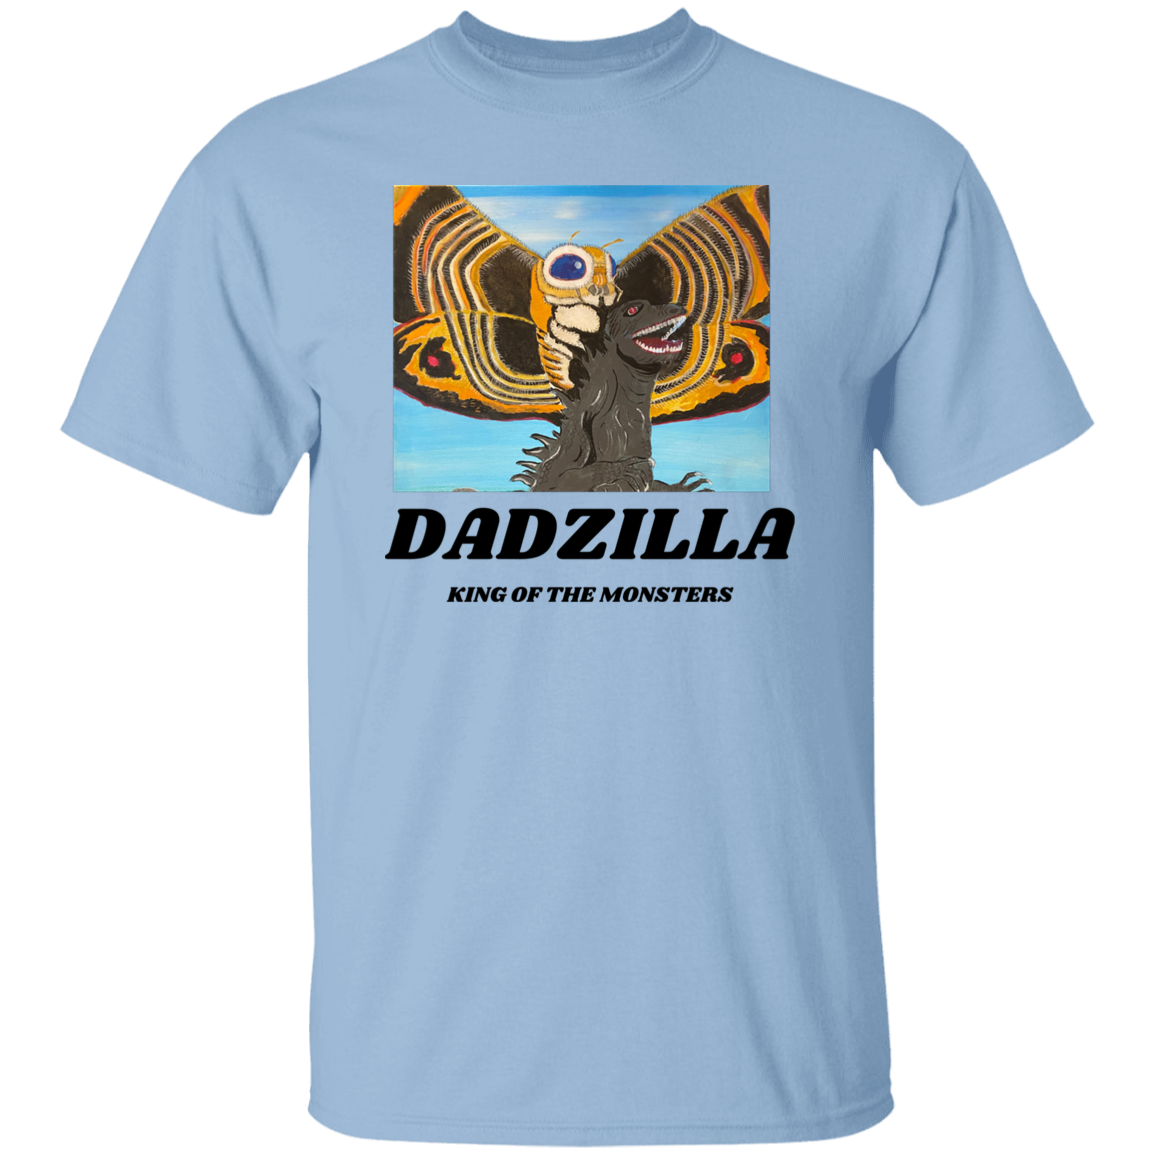 DADZILLA T-SHIRT 5.3 oz. T-Shirt